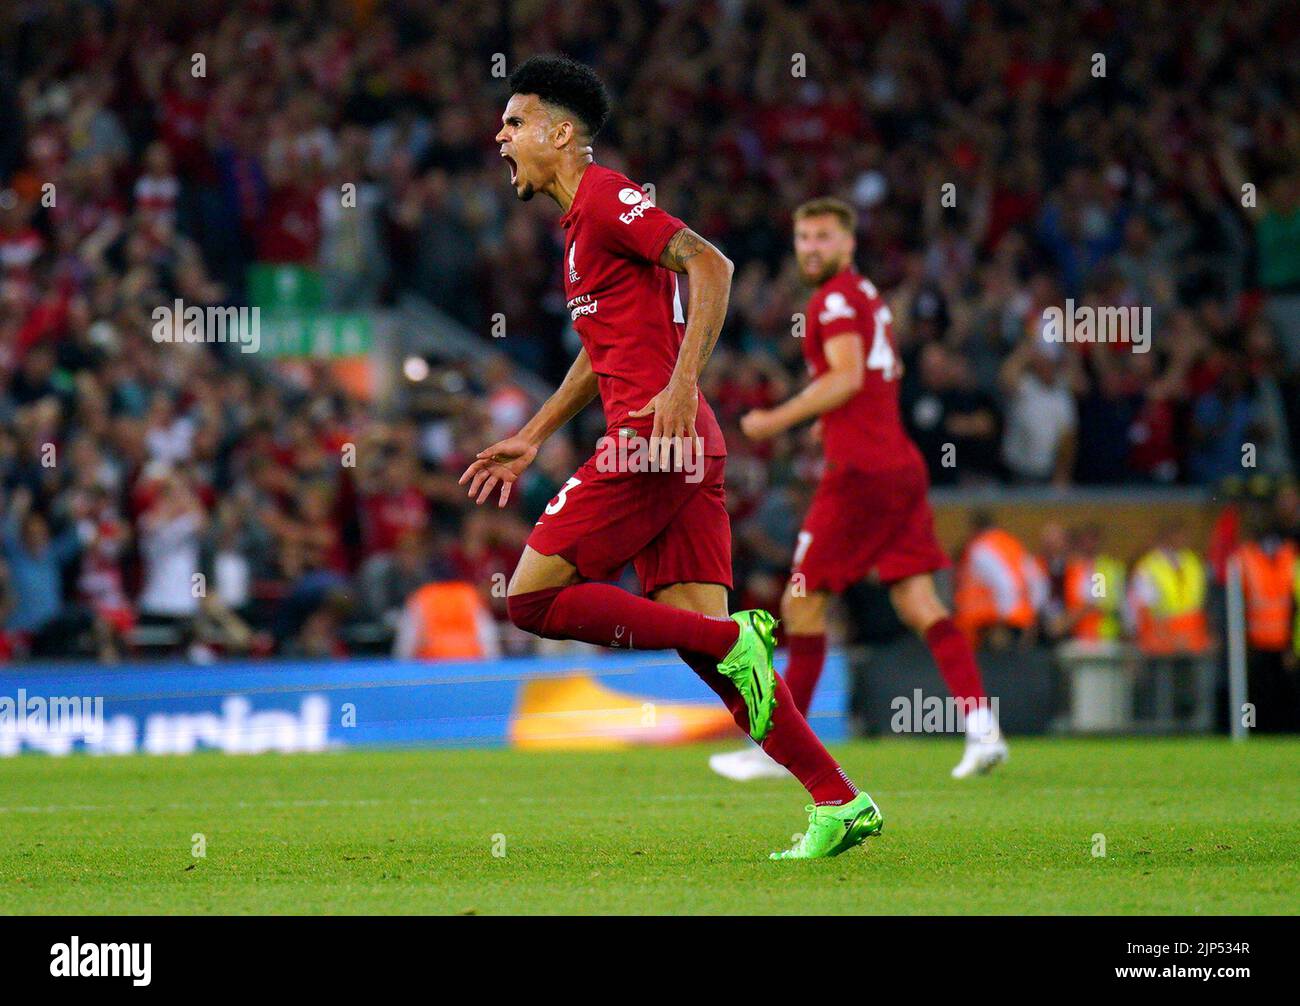 Luis Díaz, del Liverpool, celebra el primer gol de su equipo durante el partido de la Premier League en Anfield, Liverpool. Fecha de la foto: Lunes 15 de agosto de 2022. Foto de stock